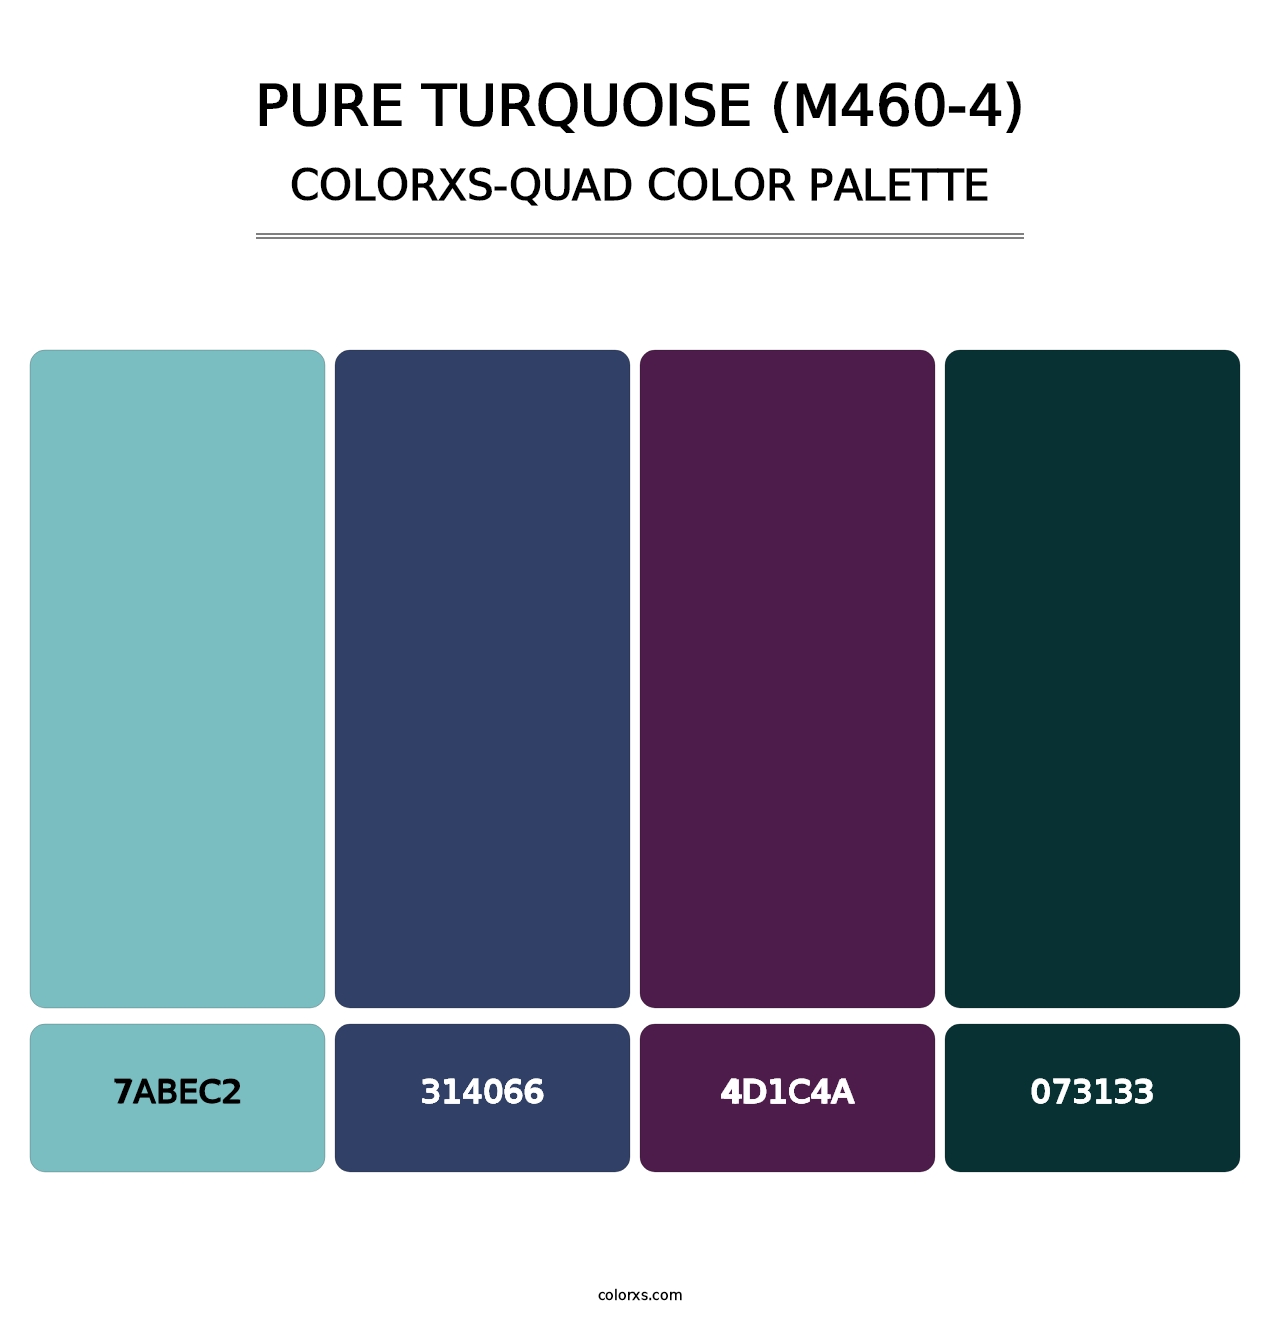 Pure Turquoise (M460-4) - Colorxs Quad Palette